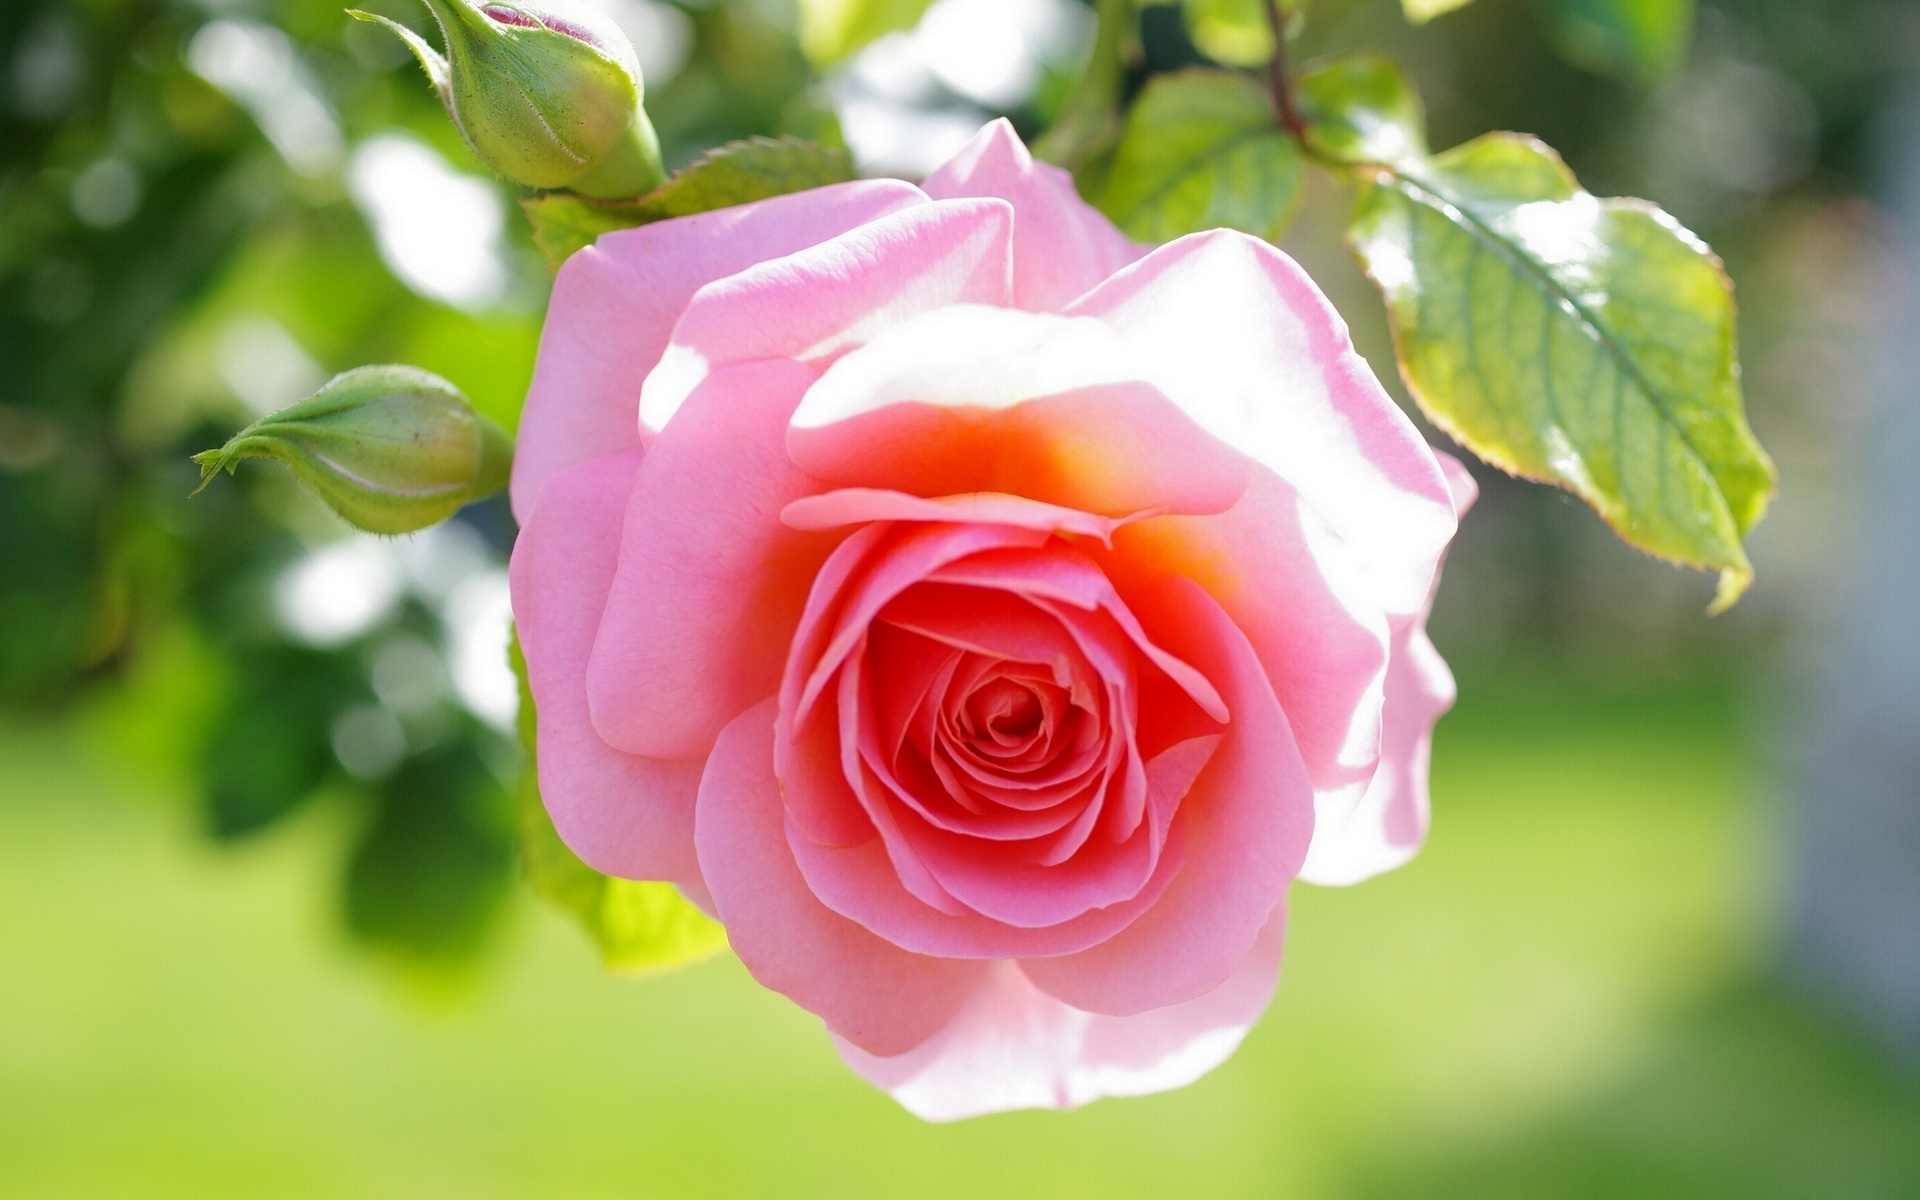 earth, rose, bud, macro, pink rose, flowers